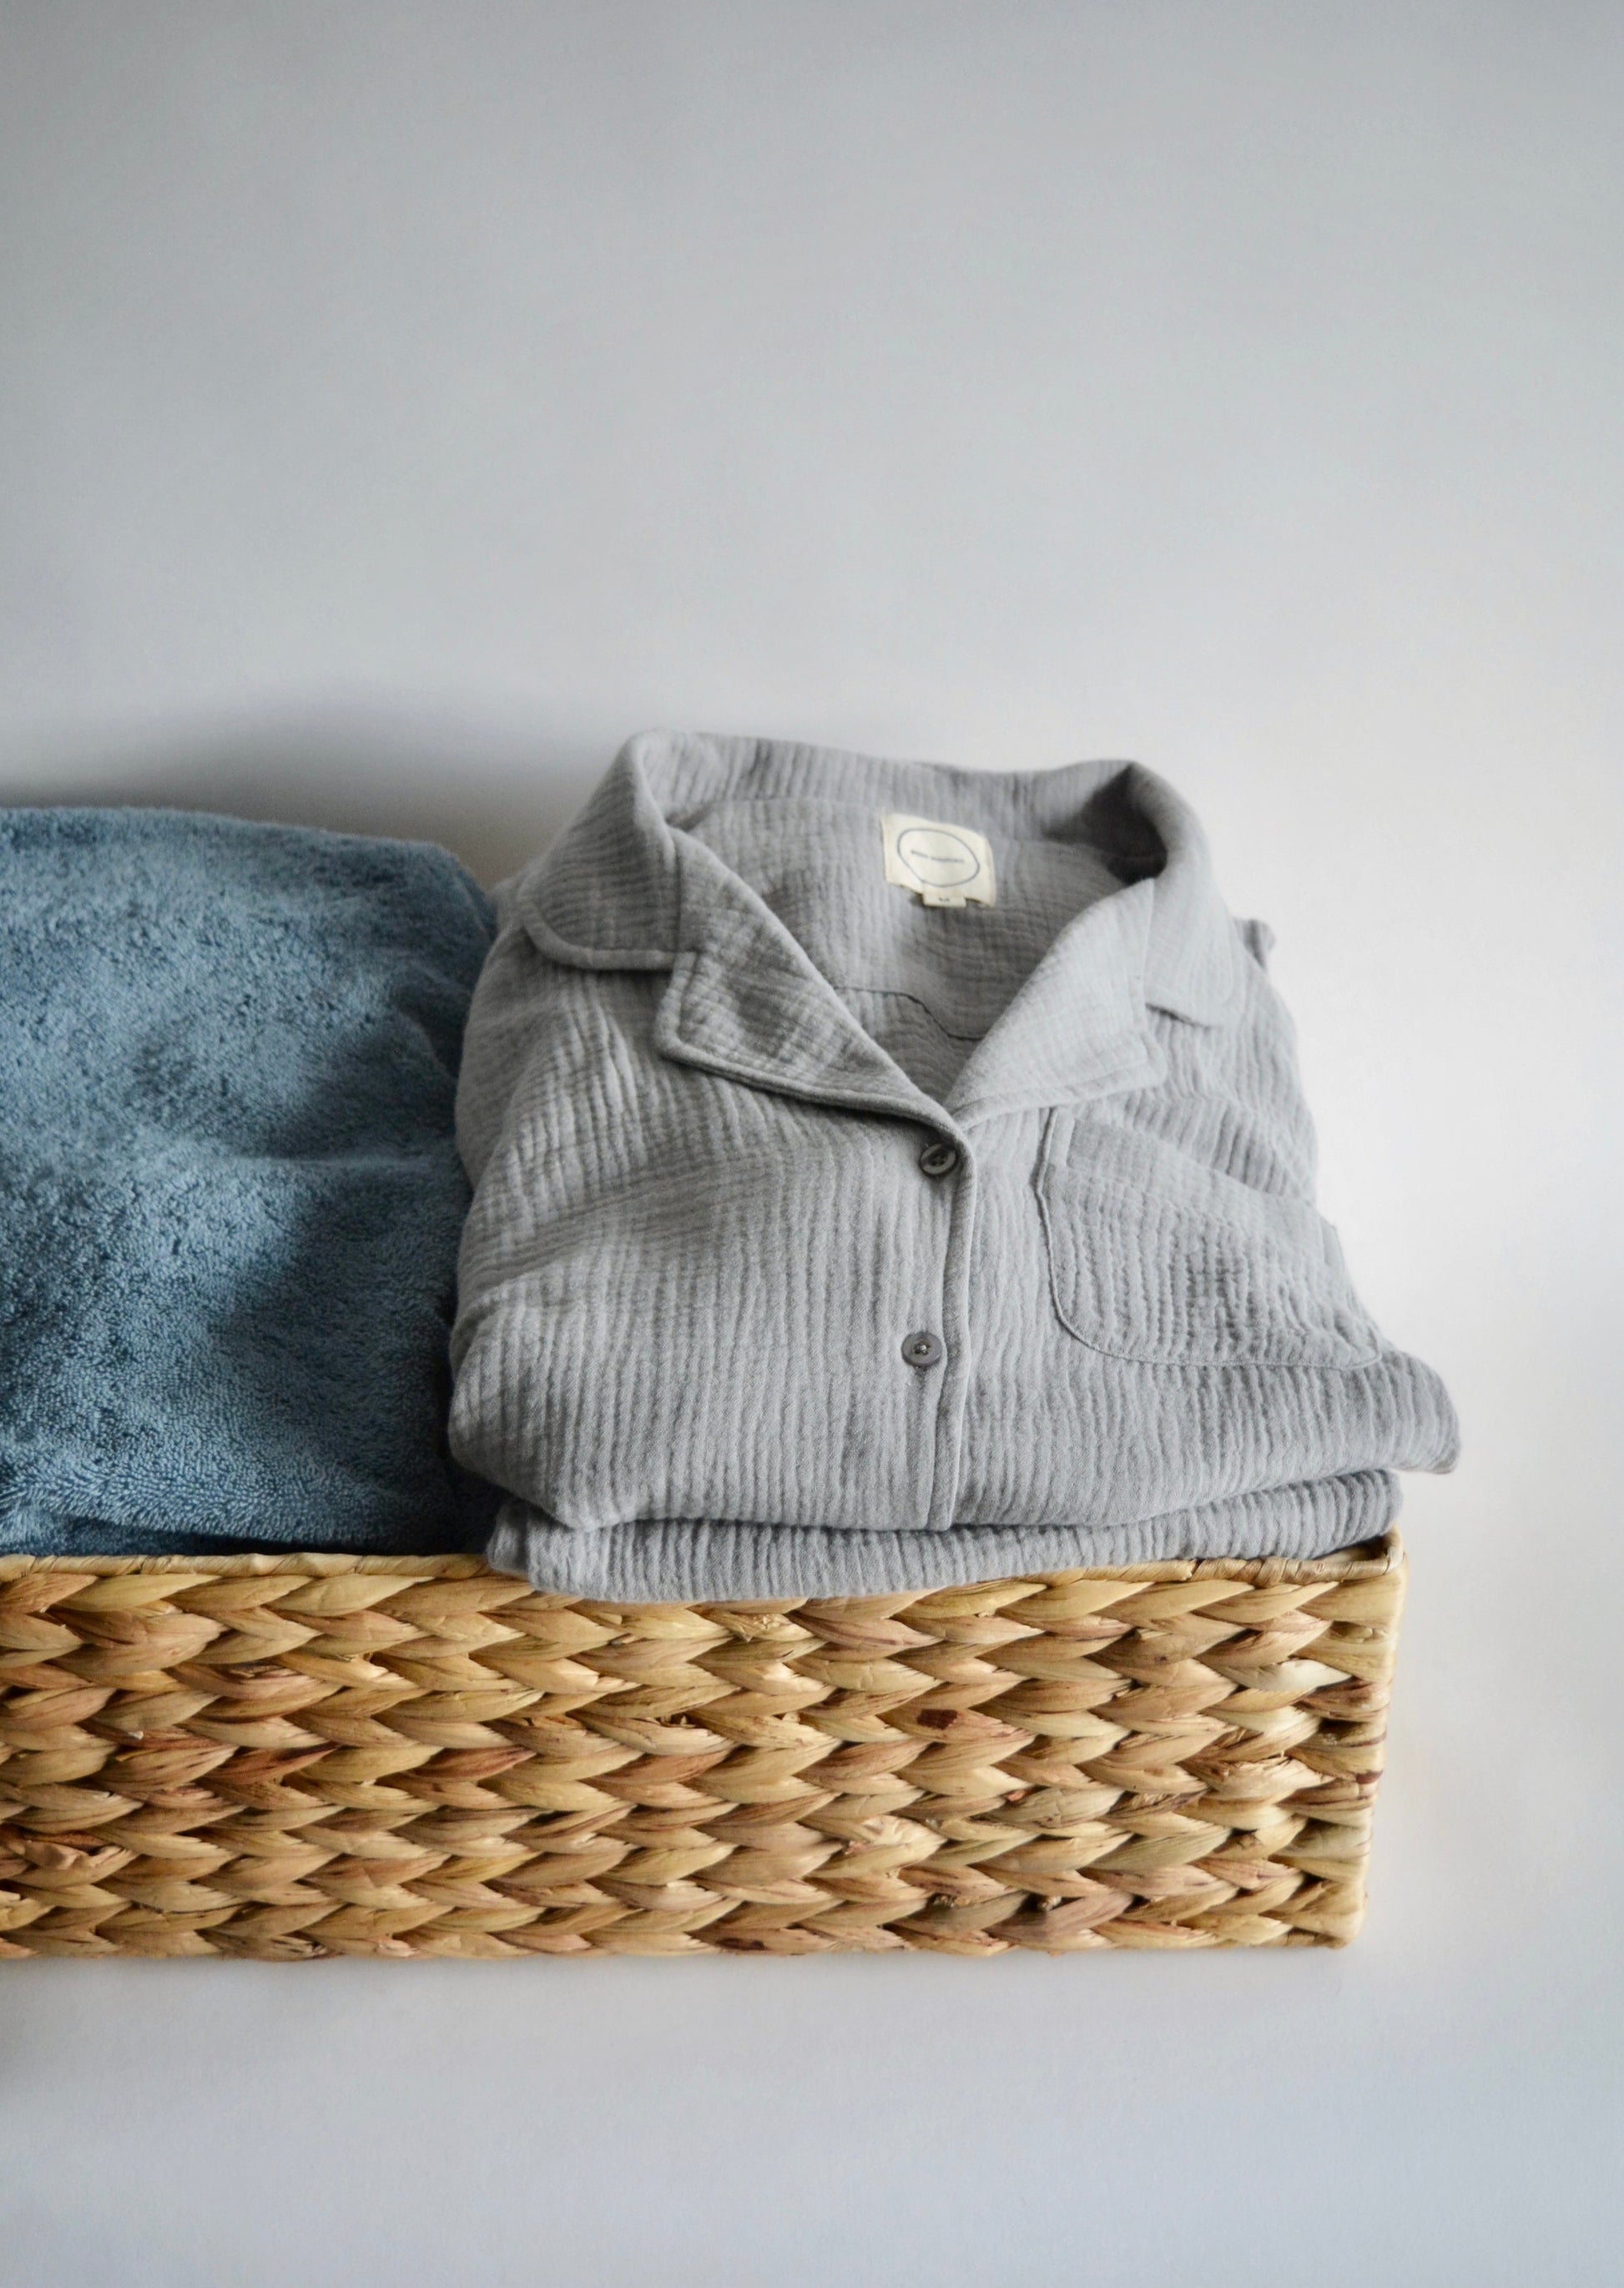 Cotton Muslin Sleepwear Set in Misty Grey color